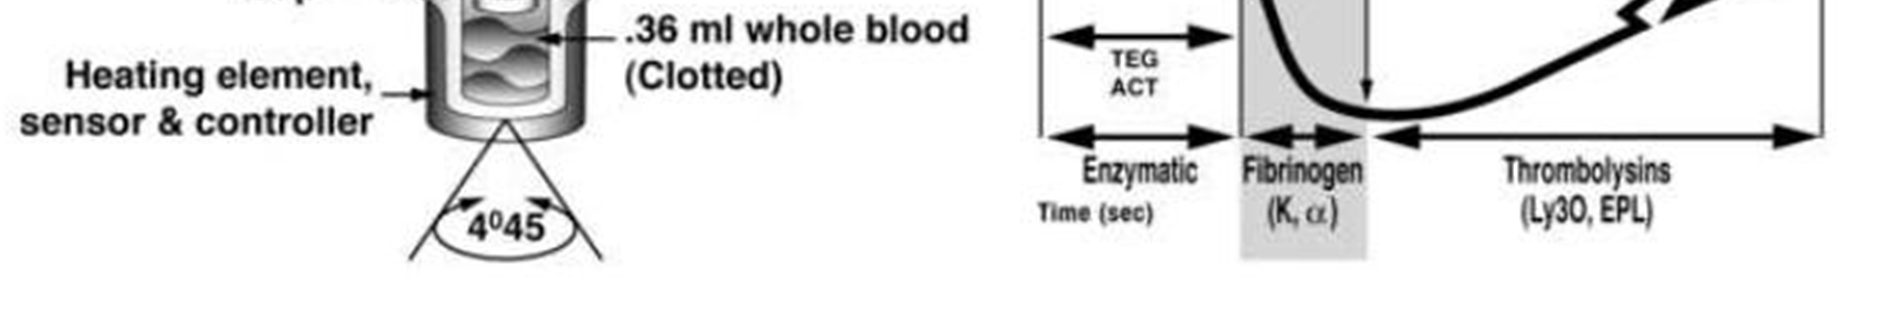 PTT, APTT (activated prothrombin time) og trombocytt-tall er kjente parametre brukt i kliniske situasjoner med blødning.